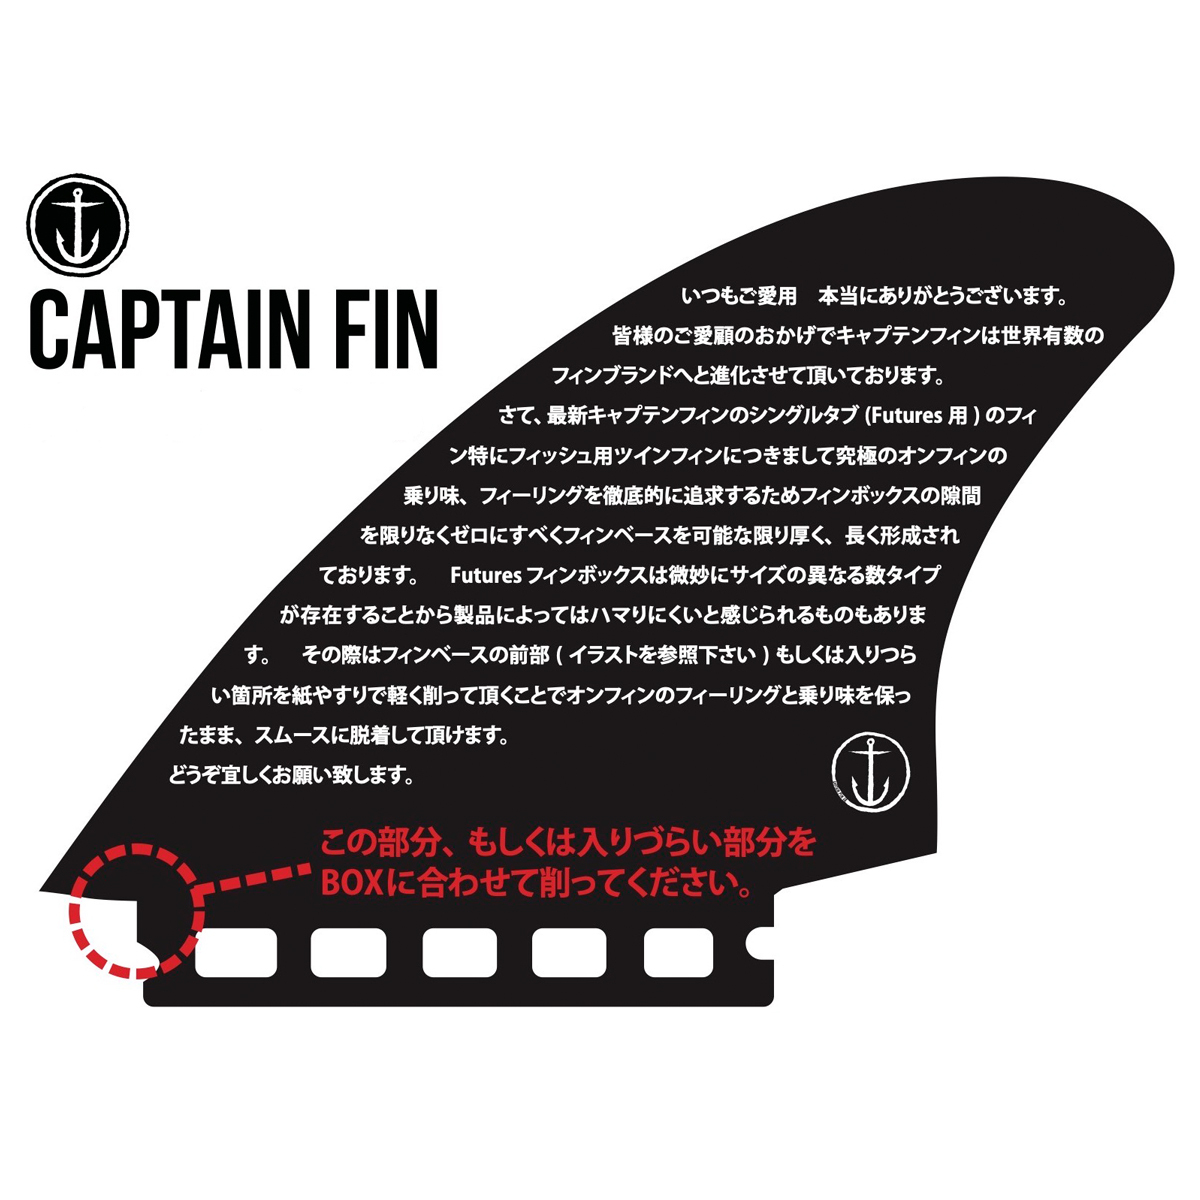 CPTAIN FIN キャプテンフィン Christenson クリステンソン ツインフィン Espesial Twin SMOKE futures.フィン ツインフィン グラス フィン スモーク